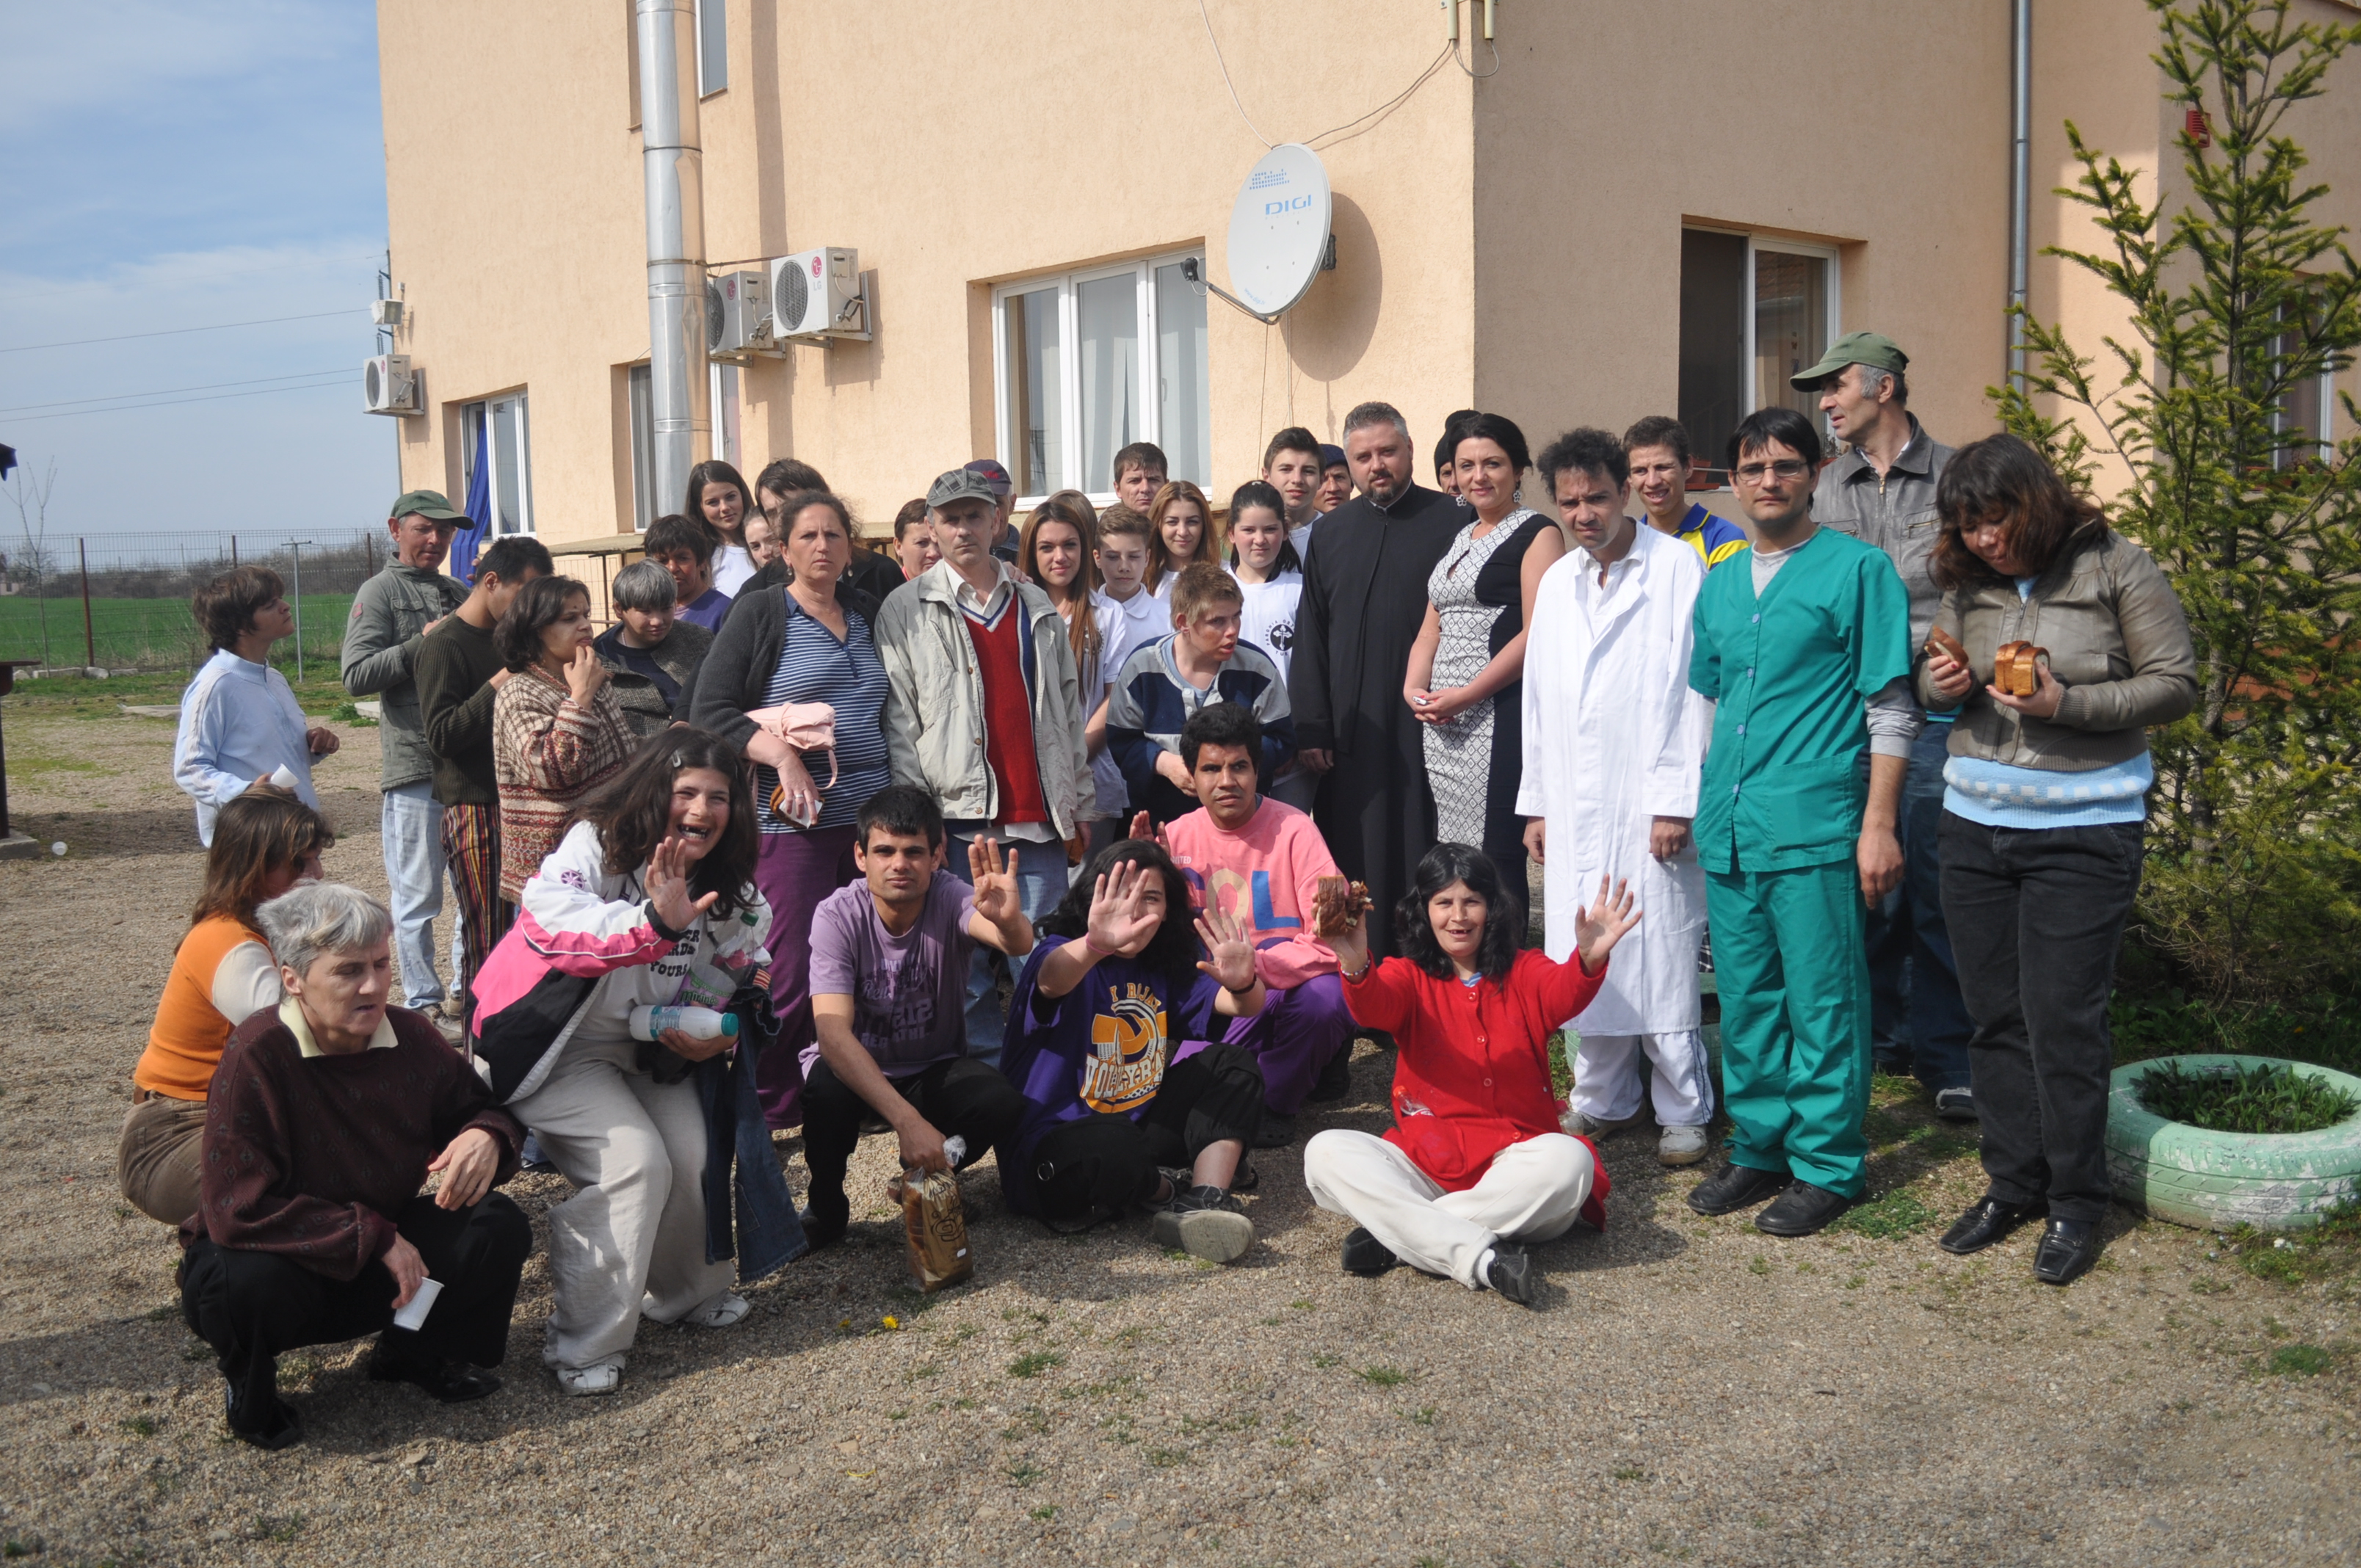 Beneficiarii Centrului "O viaţă nouă" vizitaţi de prietenii din Parohia ortodoxă Tur